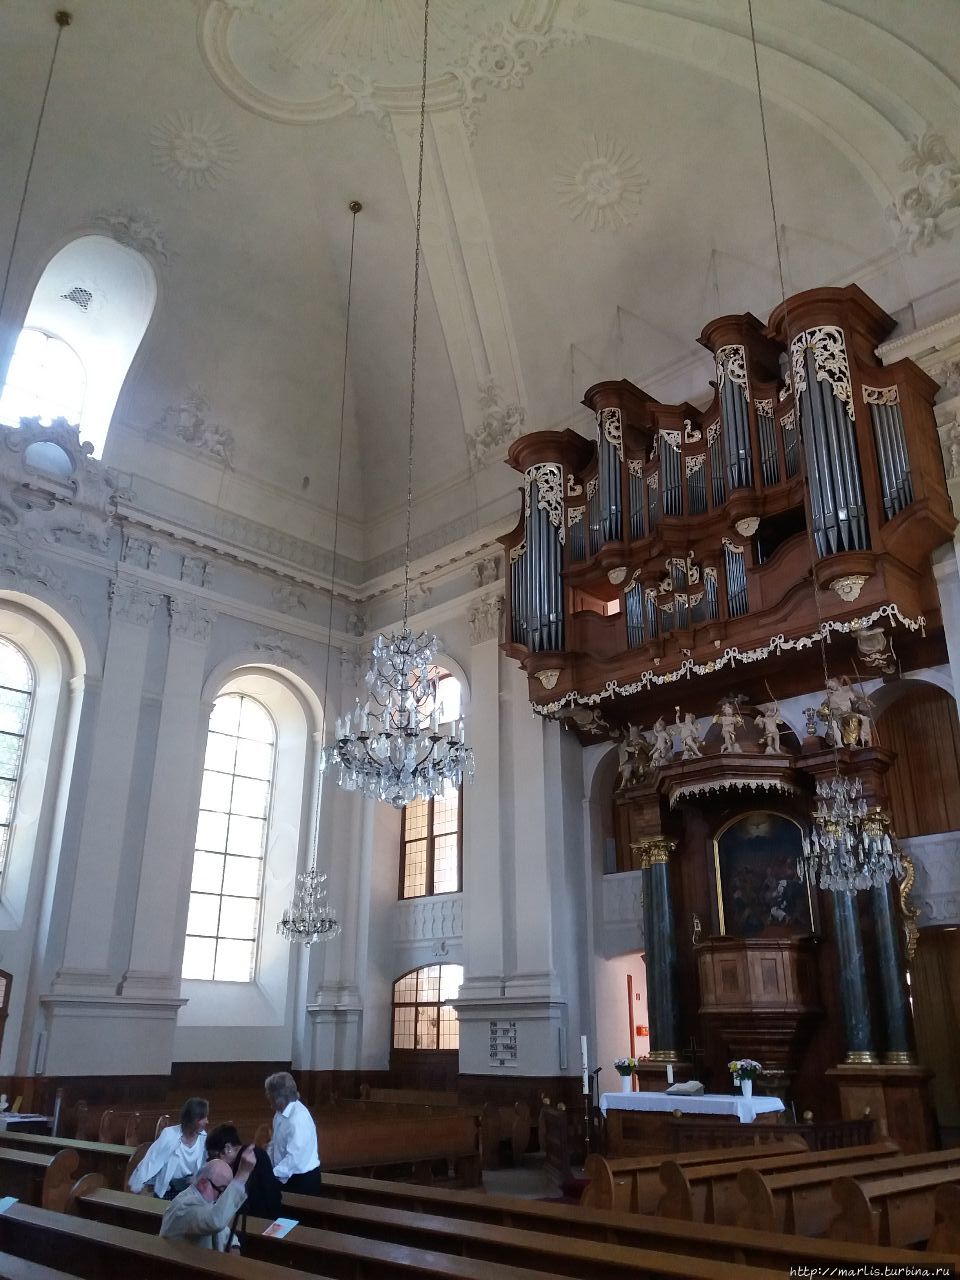 Оргaны и органная музыка - культурноe наследиe UNESCO